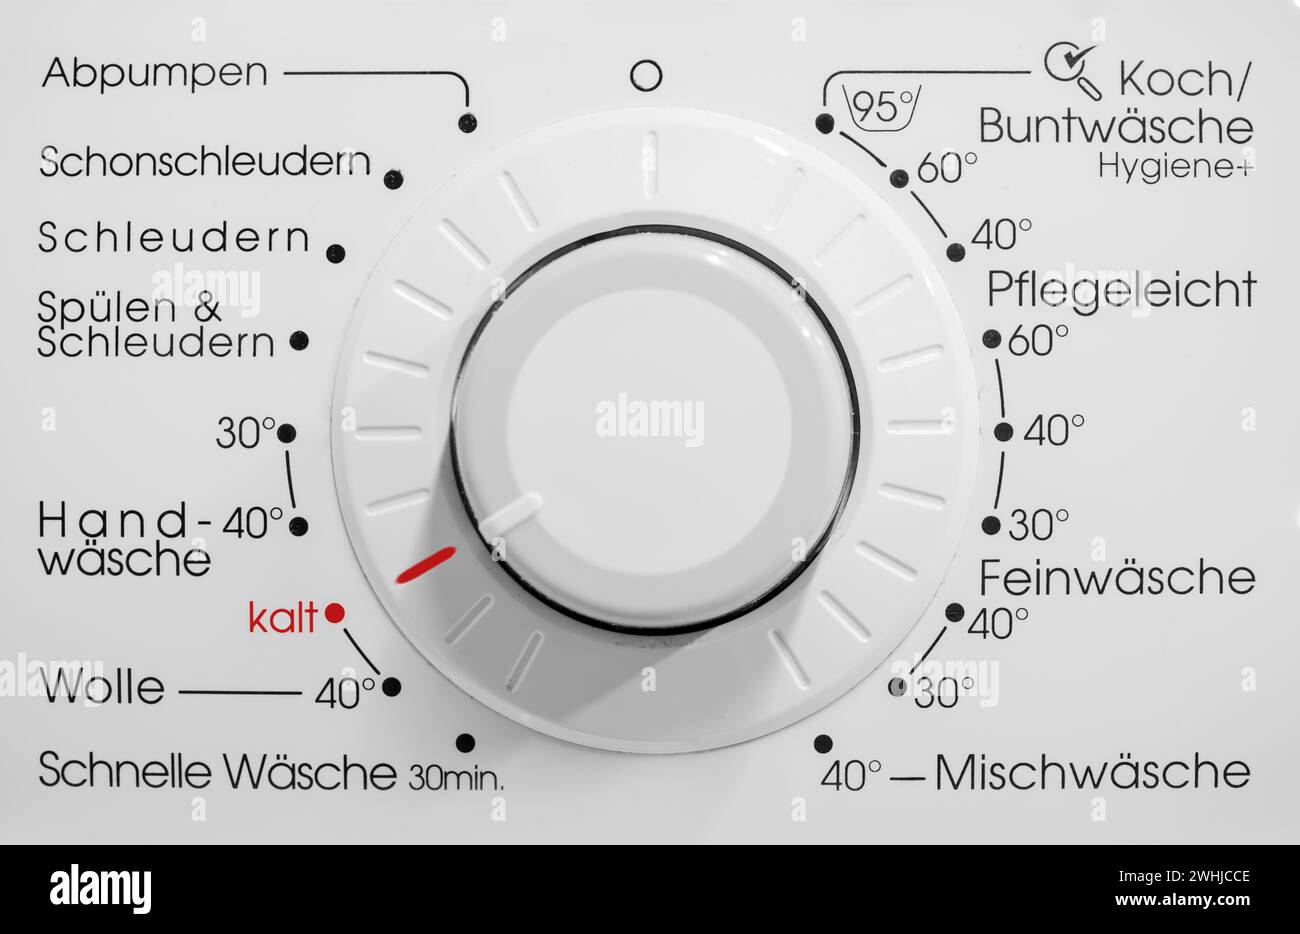 Pannello di controllo della lavatrice tedesca. Visualizzare la lavatrice con la scritta rossa Kalt - Cold Foto Stock